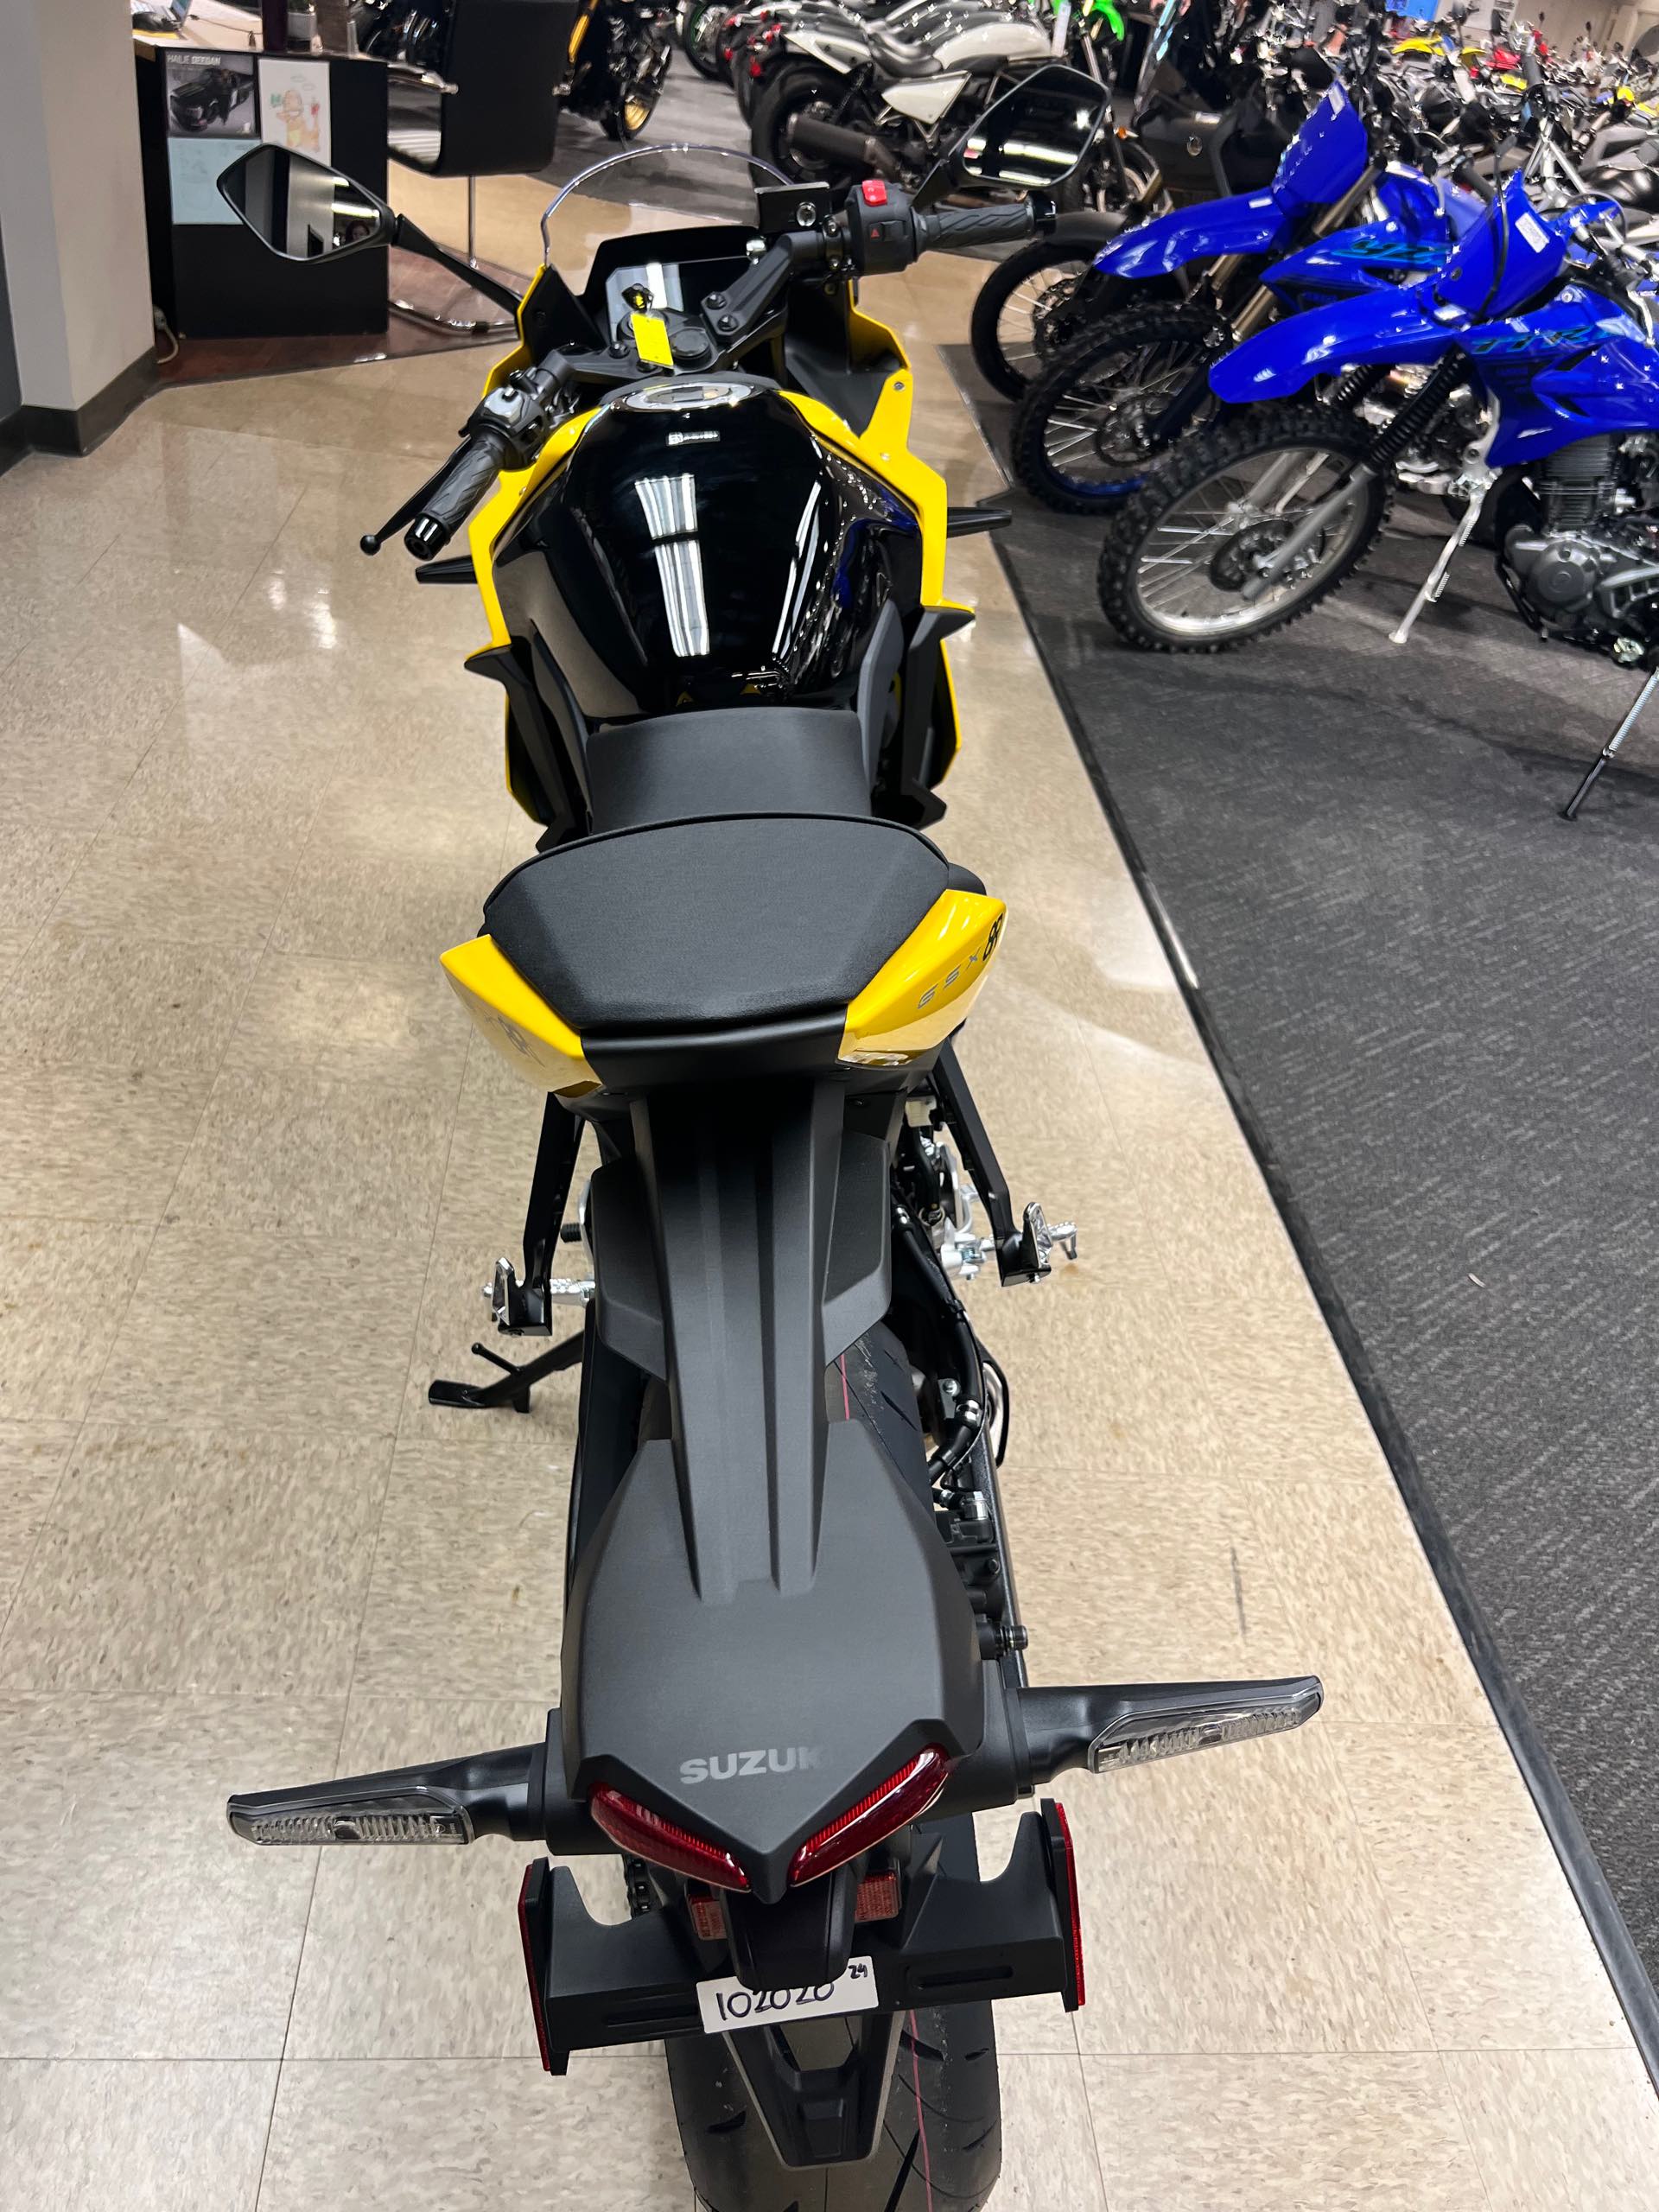 2024 Suzuki GSX-S 8R at Sloans Motorcycle ATV, Murfreesboro, TN, 37129